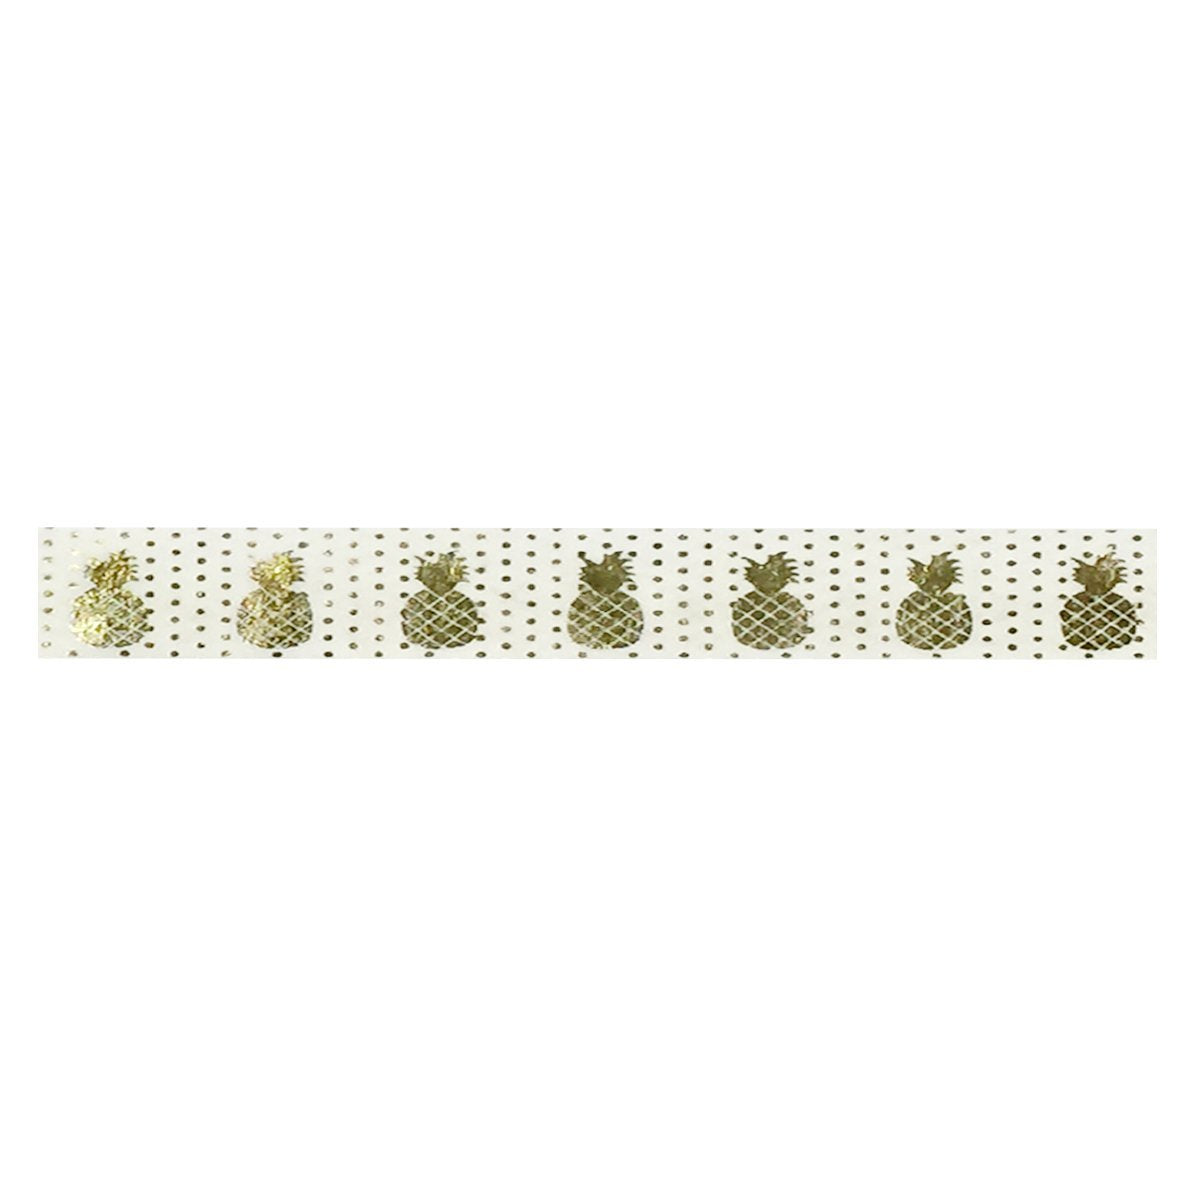 Allydrew Washi Tapes Decorative Masking Tapes, Set of 12, ADSET12